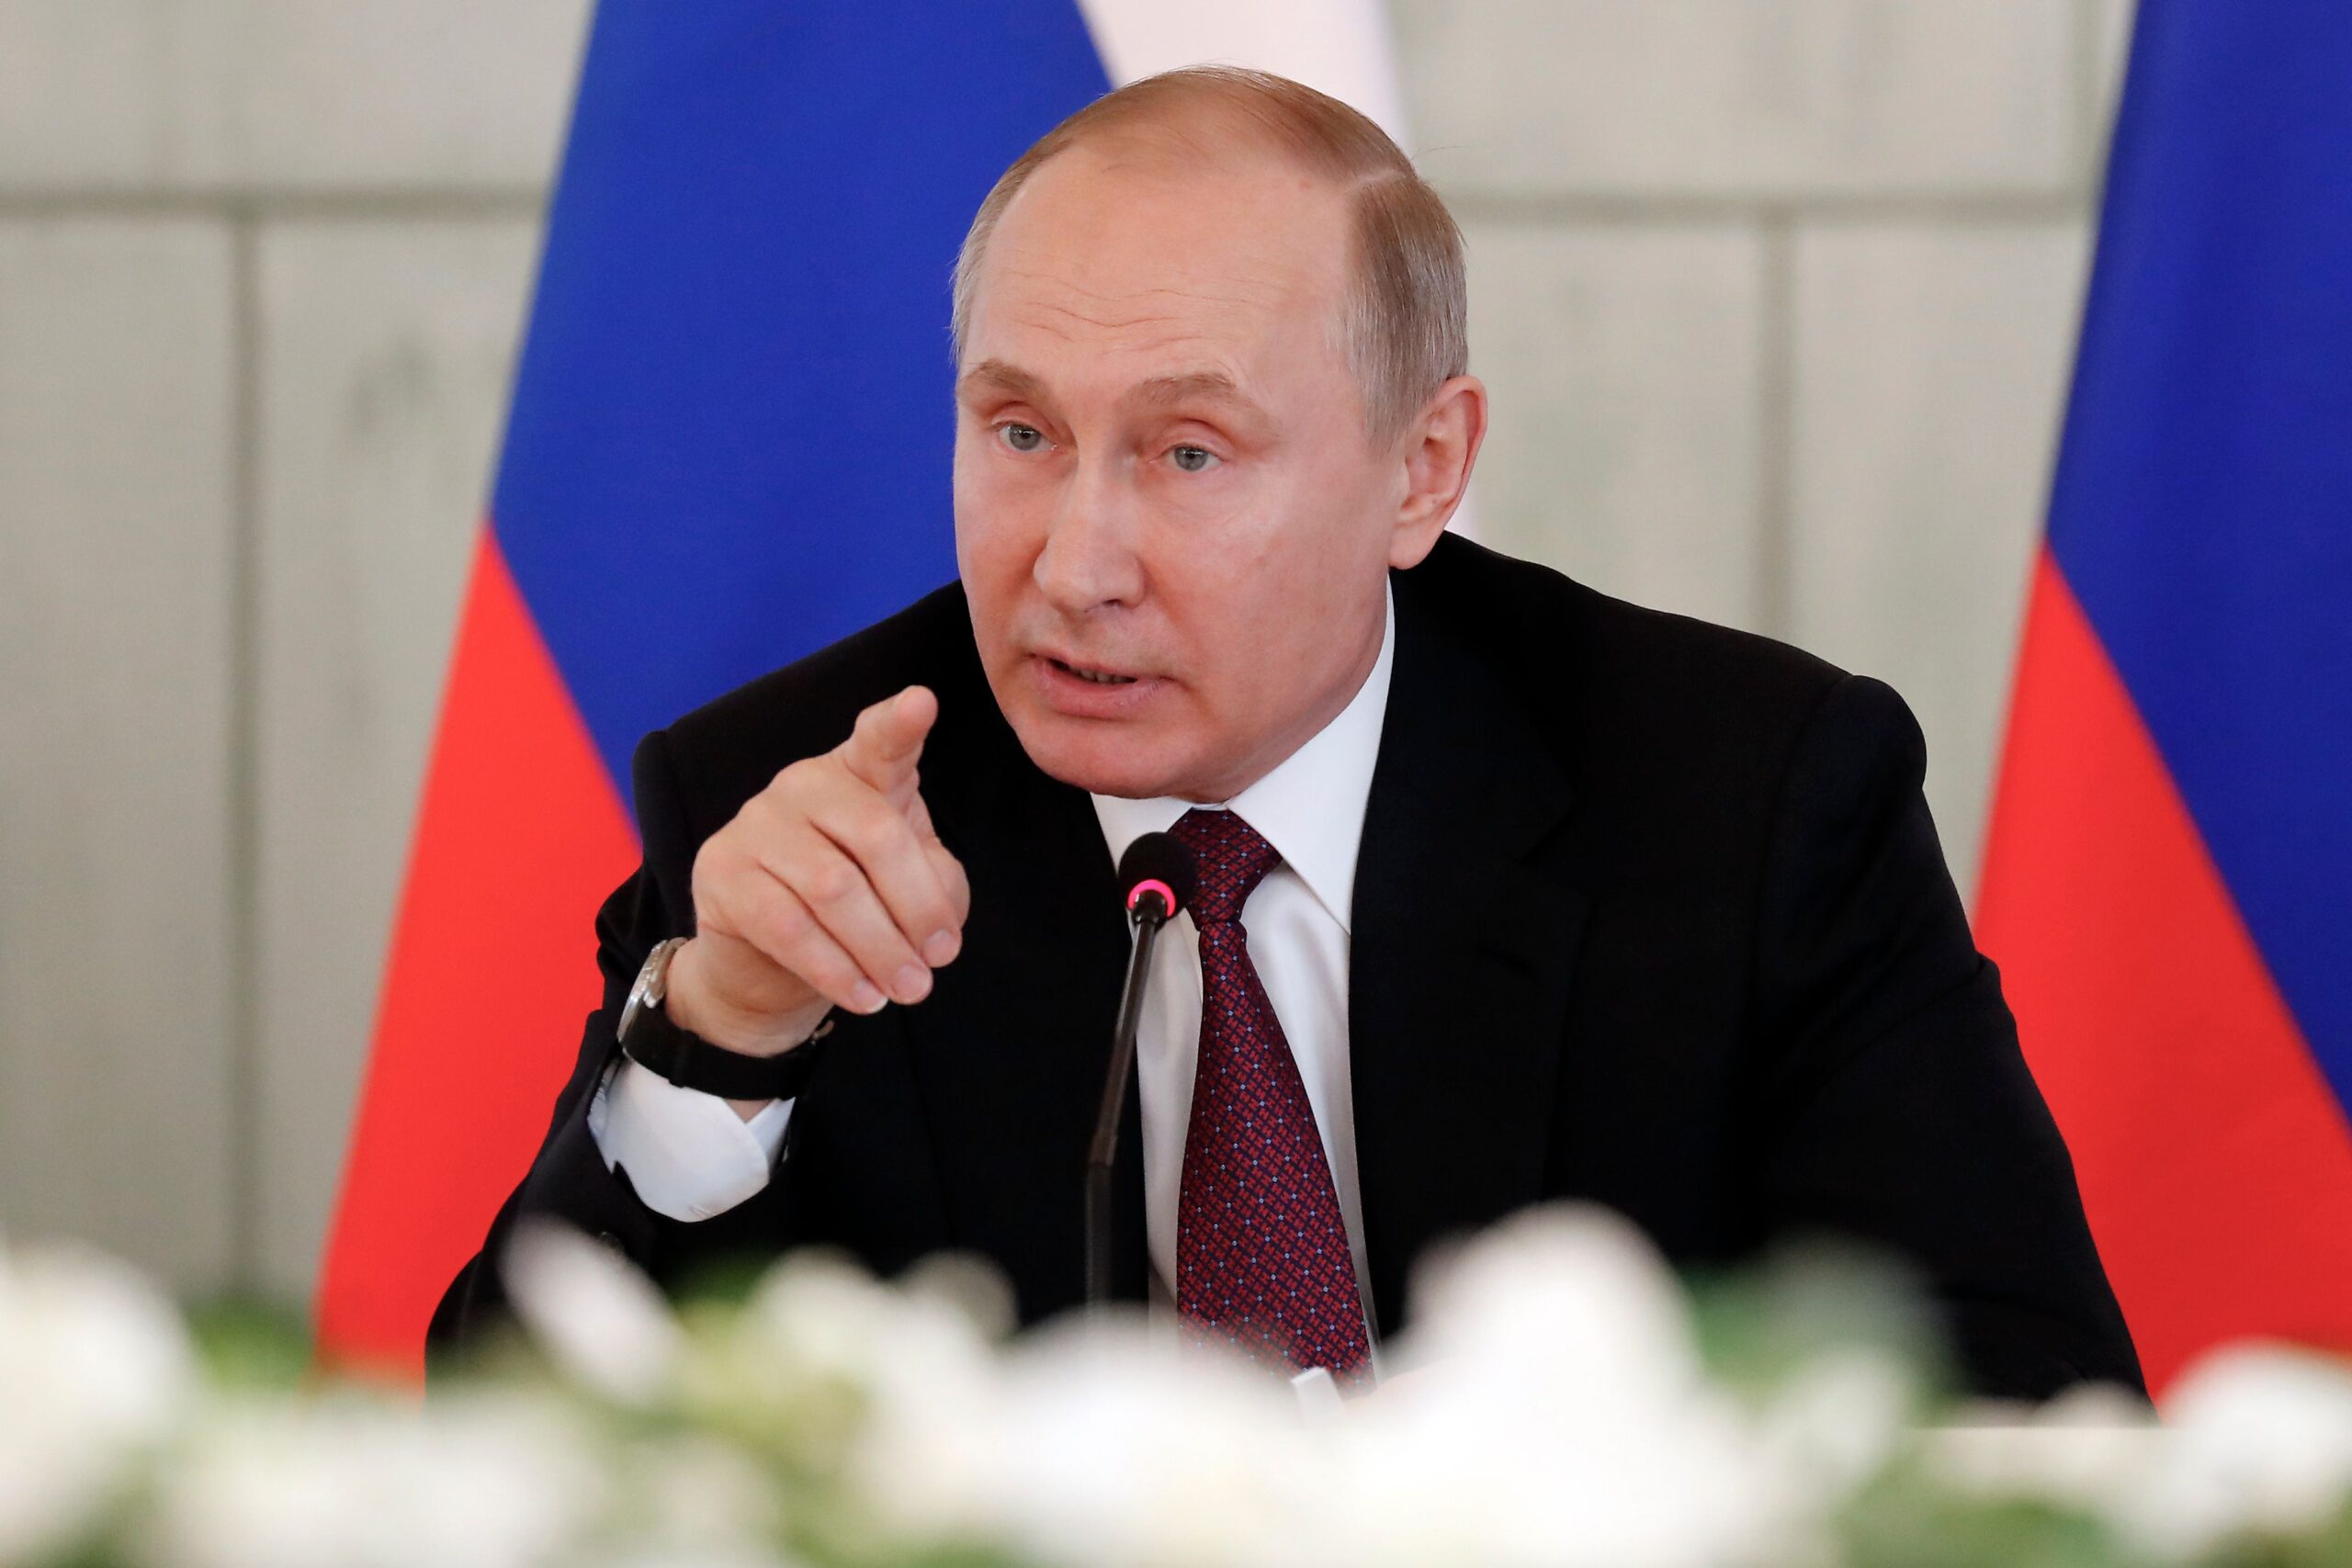 بوتين : موسكو منفتحة على الحوار لكن مصالحها غير قابلة للتفاوض